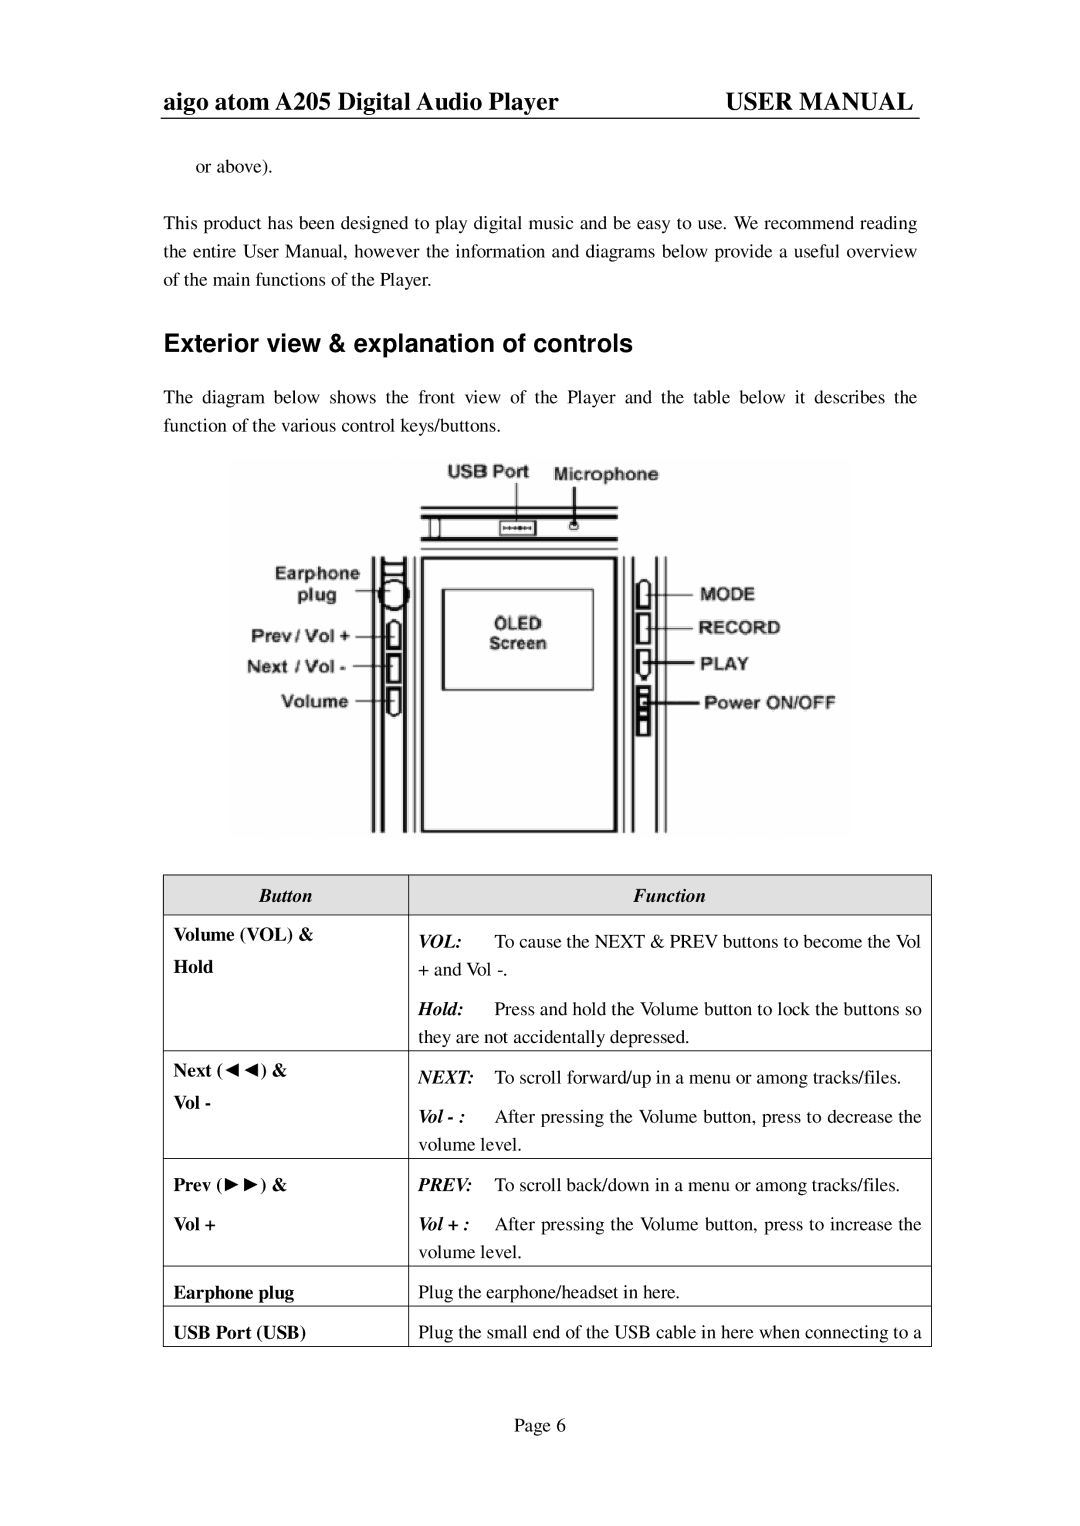 Aigo atom A205 user manual Exterior view & explanation of controls, Vol 